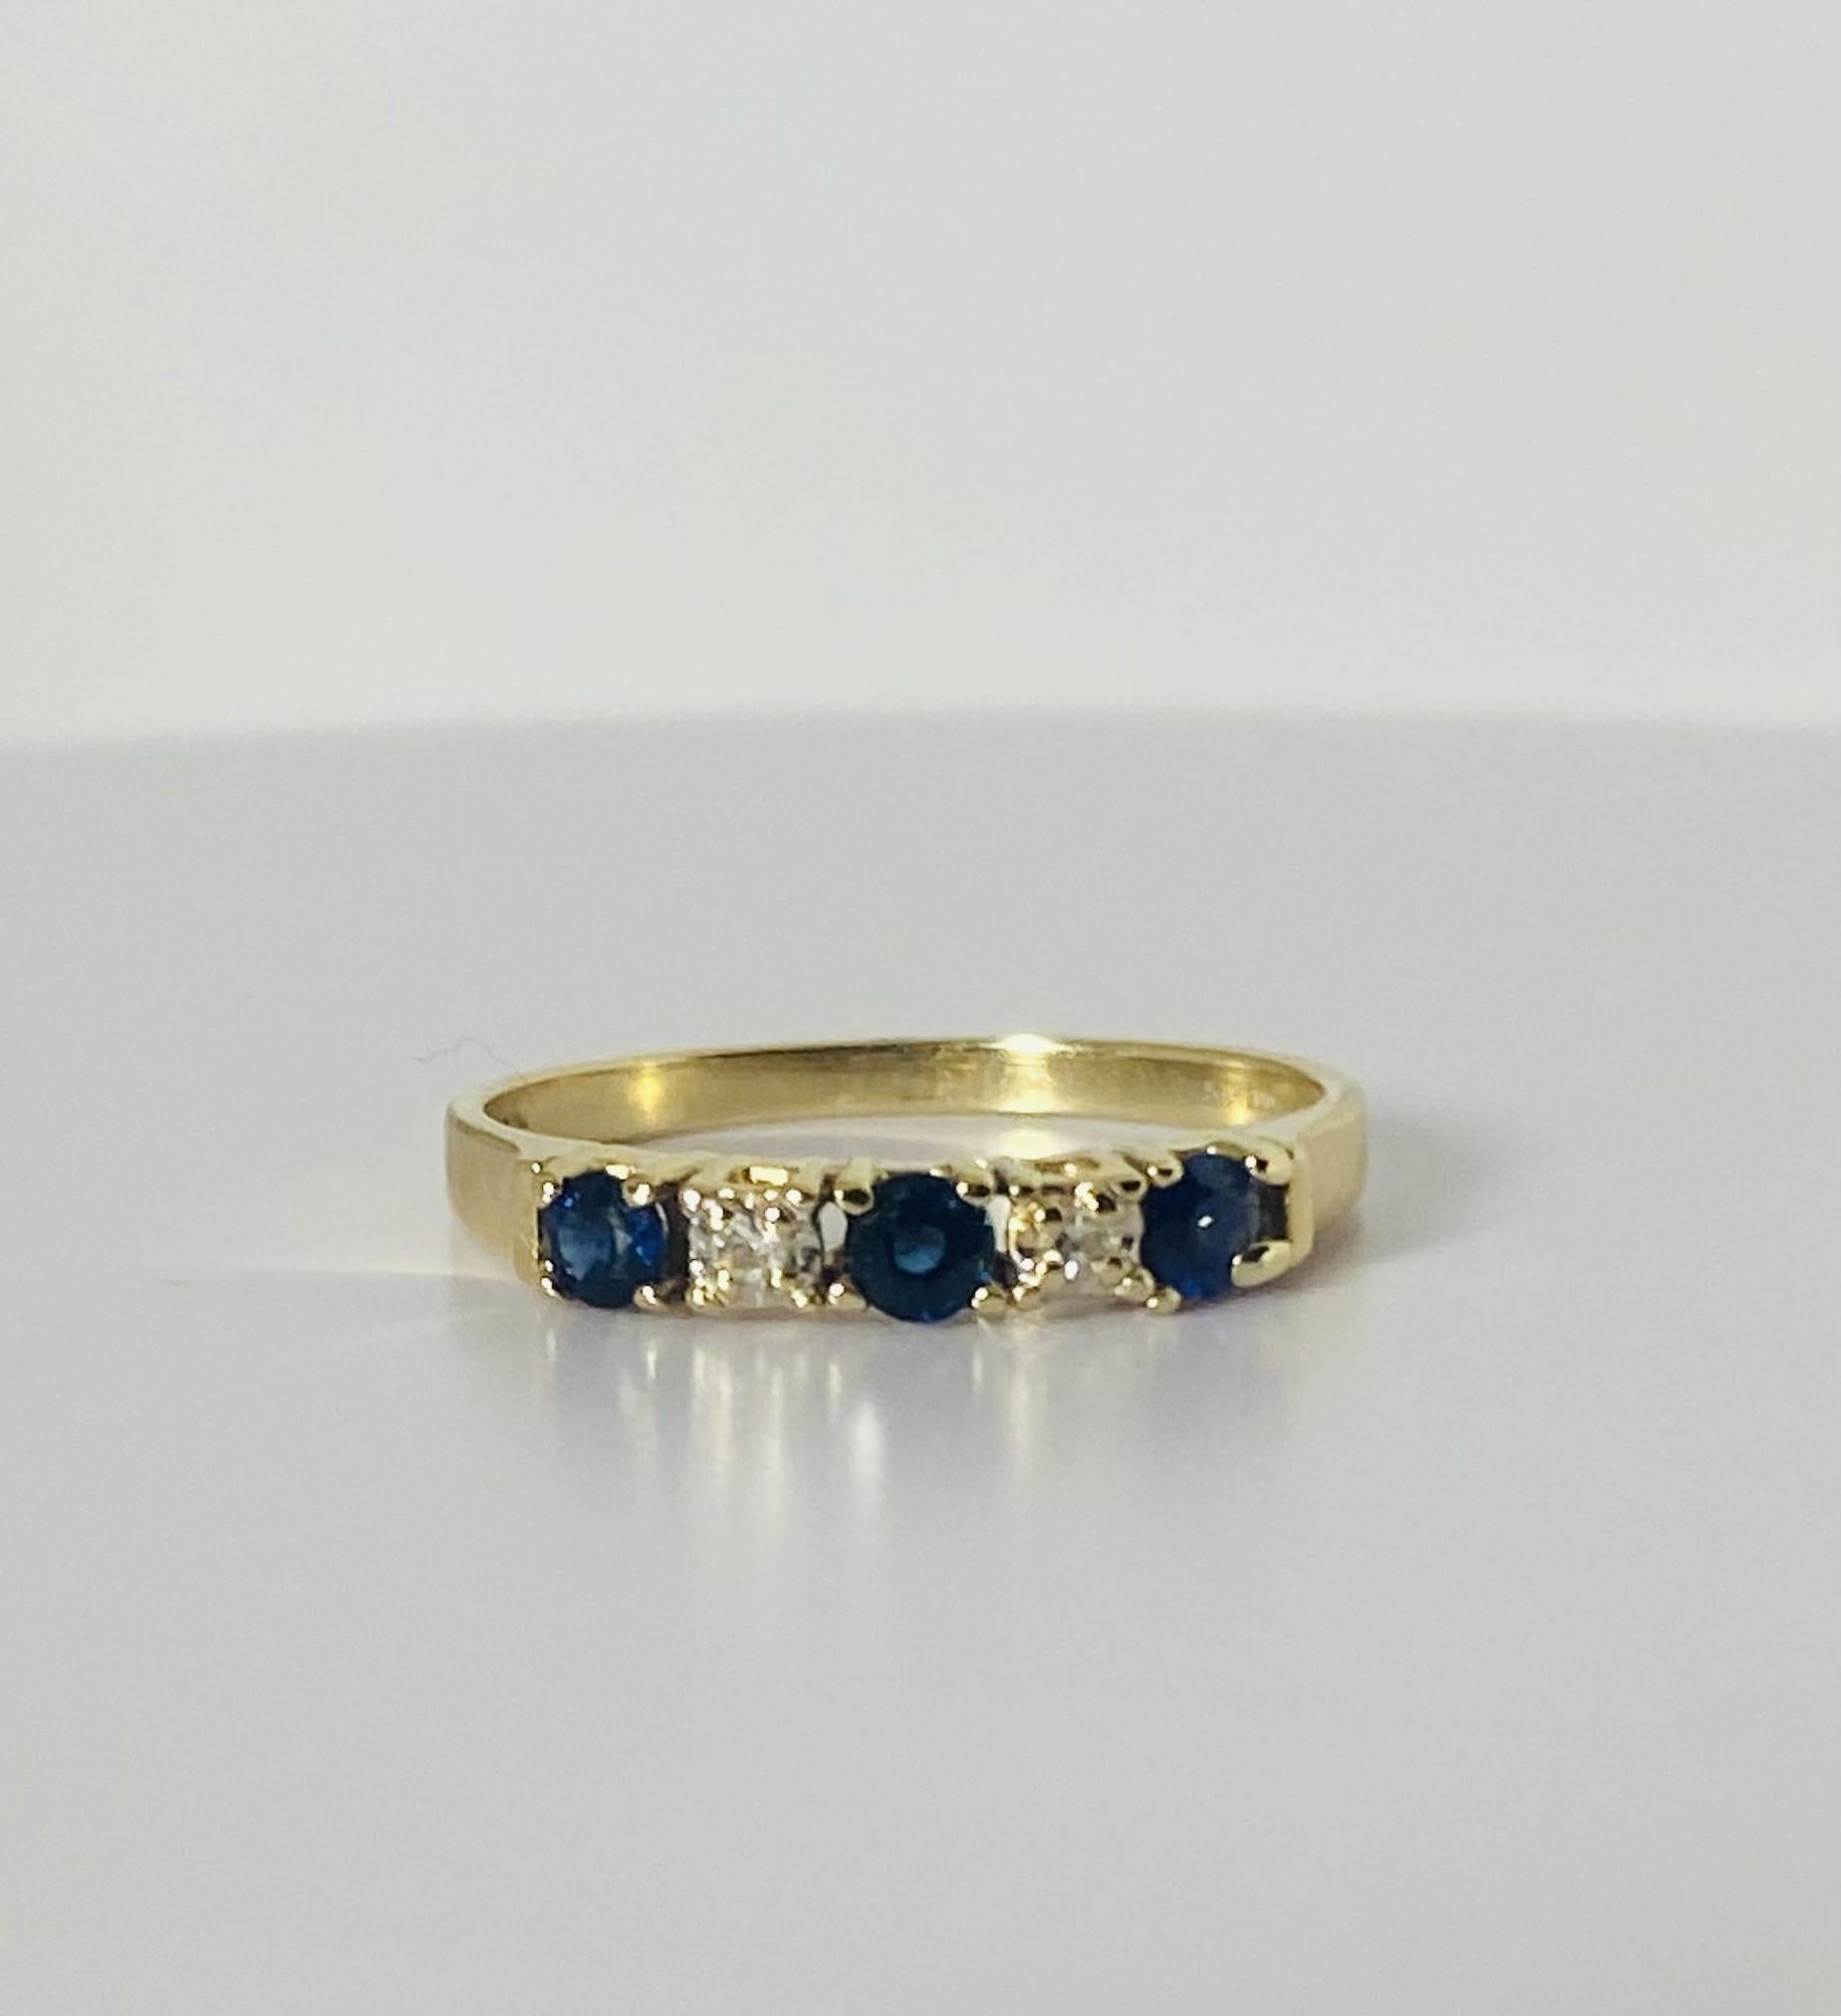 Entdecken Sie diesen atemberaubenden Vintage-Ring mit 2 Diamanten im Rosenschliff von je 0,05 Karat und 2 Saphiren von je 0,10 Karat in einer schönen saphirblauen Farbe im Rundschliff. Der Ring aus den 1950er Jahren ist aus 14 Karat Gelbgold